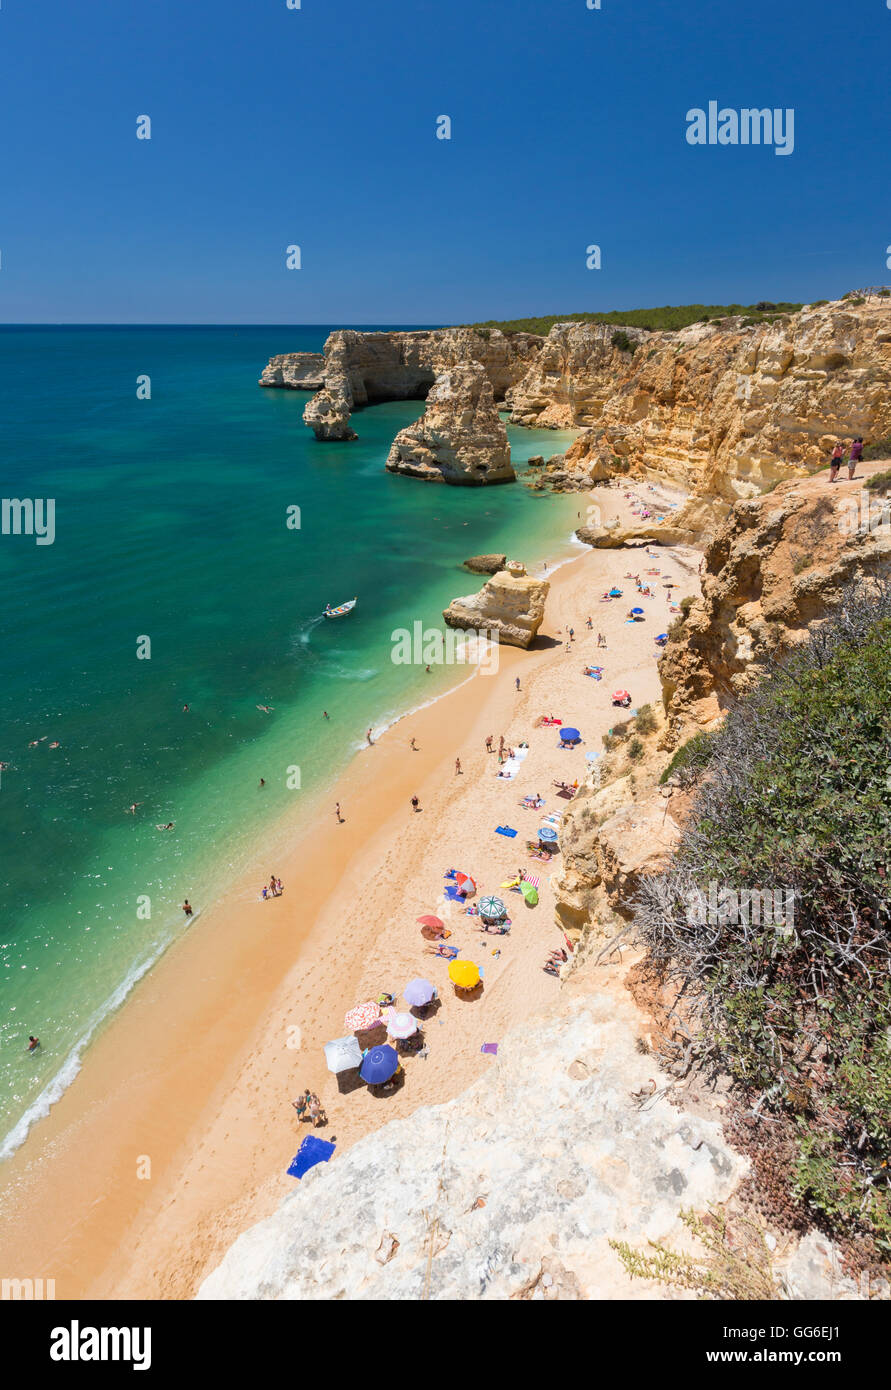 Les touristes sur une plage de sable Praia da Marinha entouré d'océan turquoise, Caramujeira, Municipalité de Lagoa, Algarve, Portugal Banque D'Images